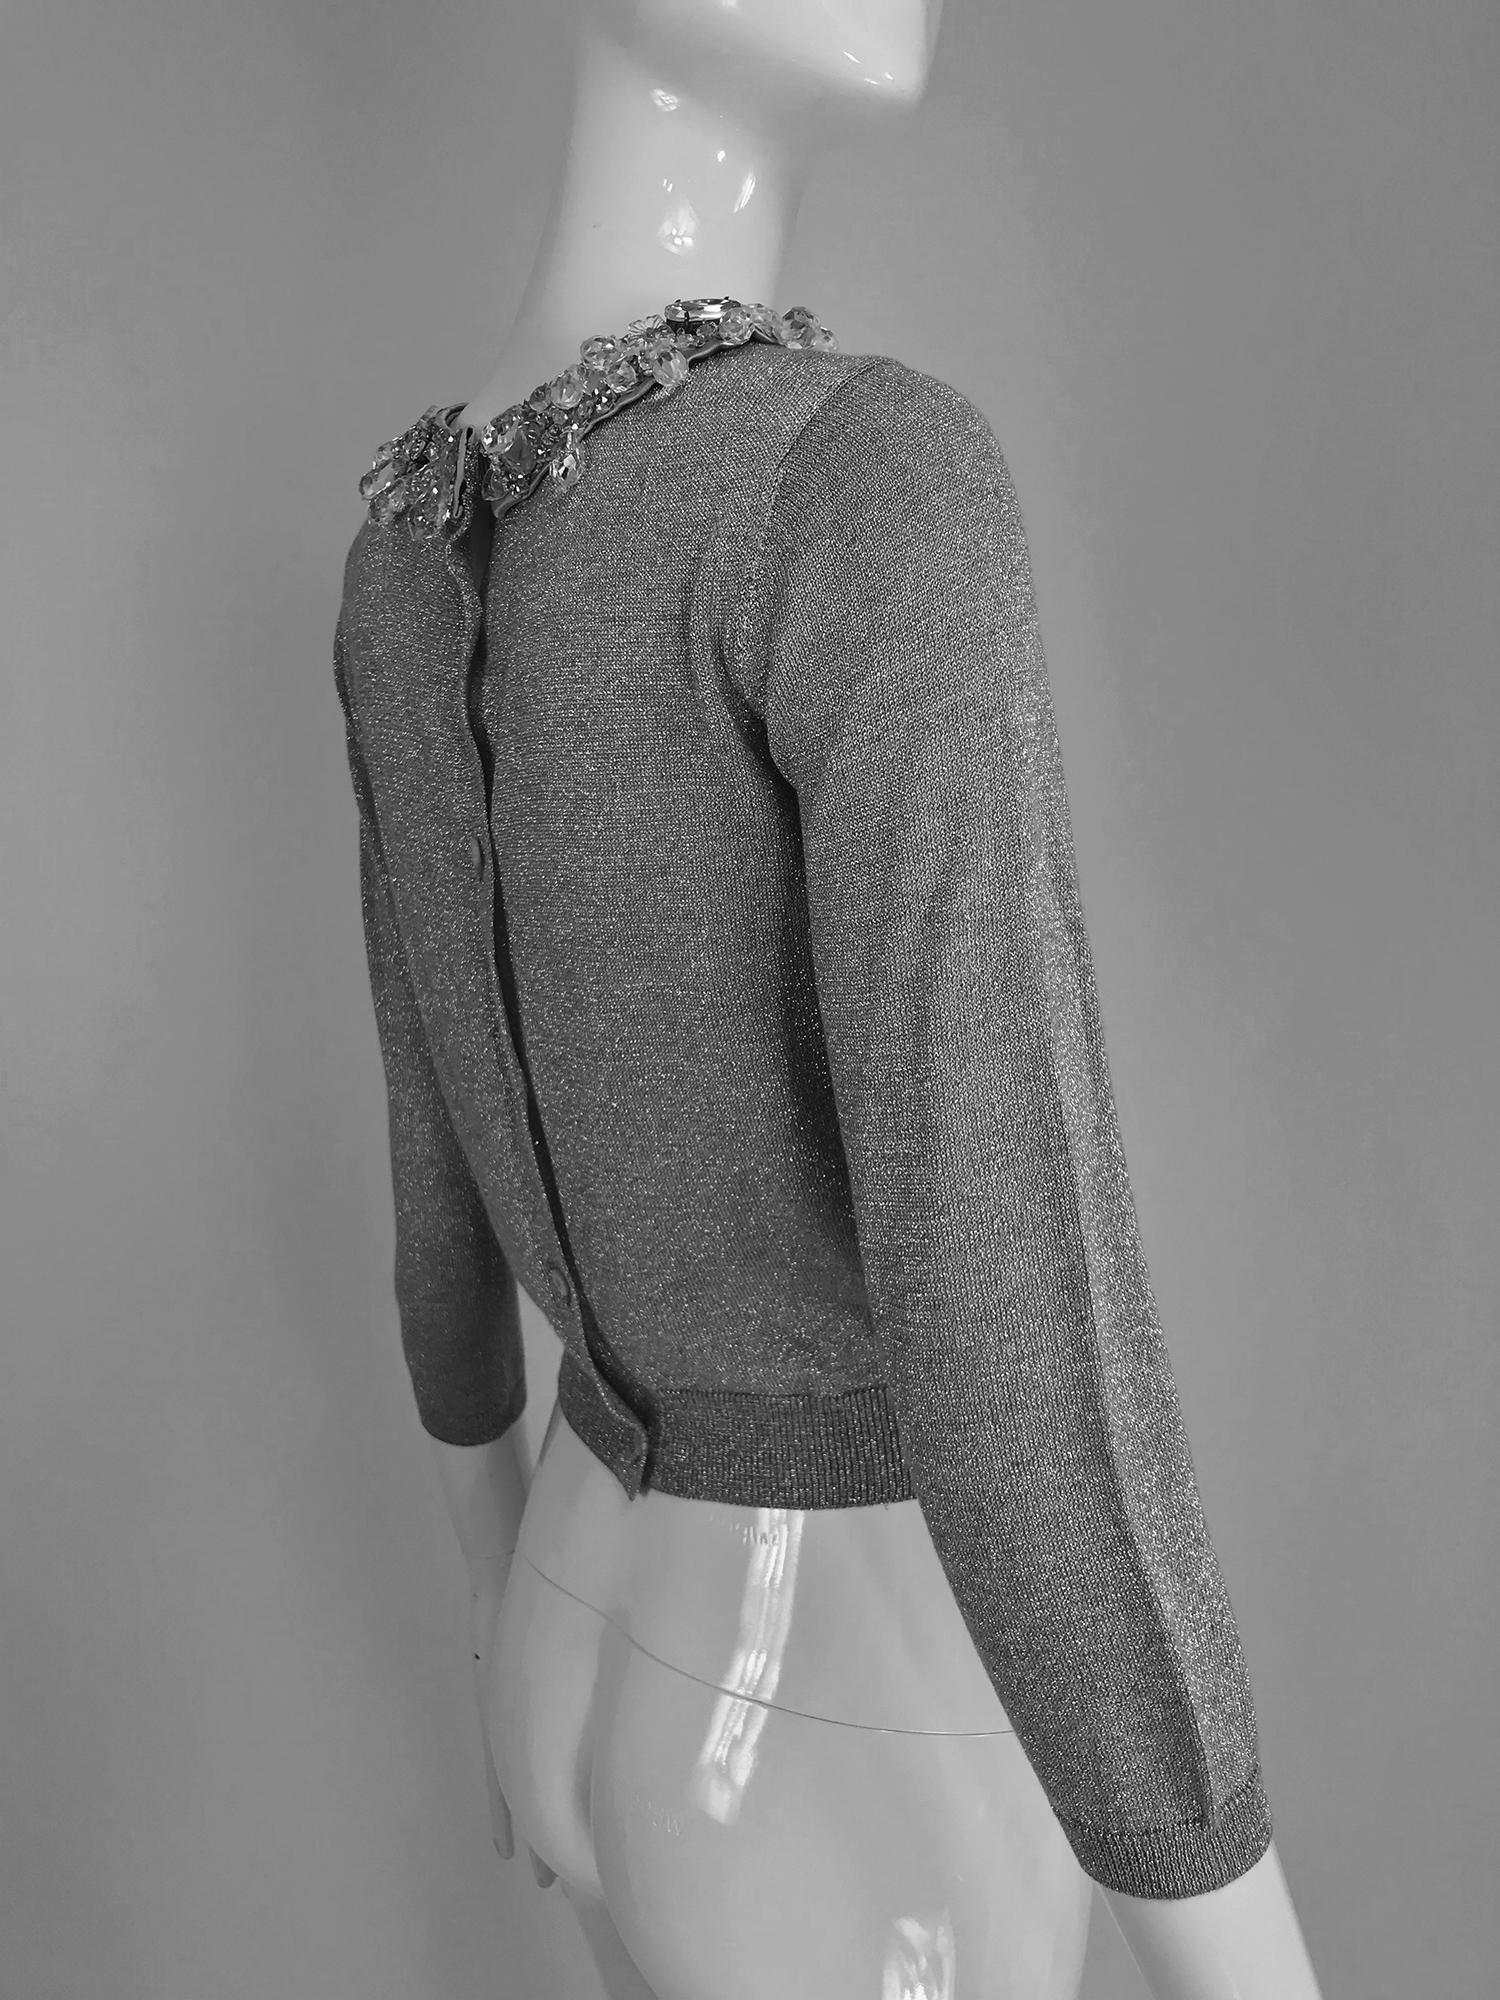 Prada silver metallic grey rhinestone collar cardigan sweater 2